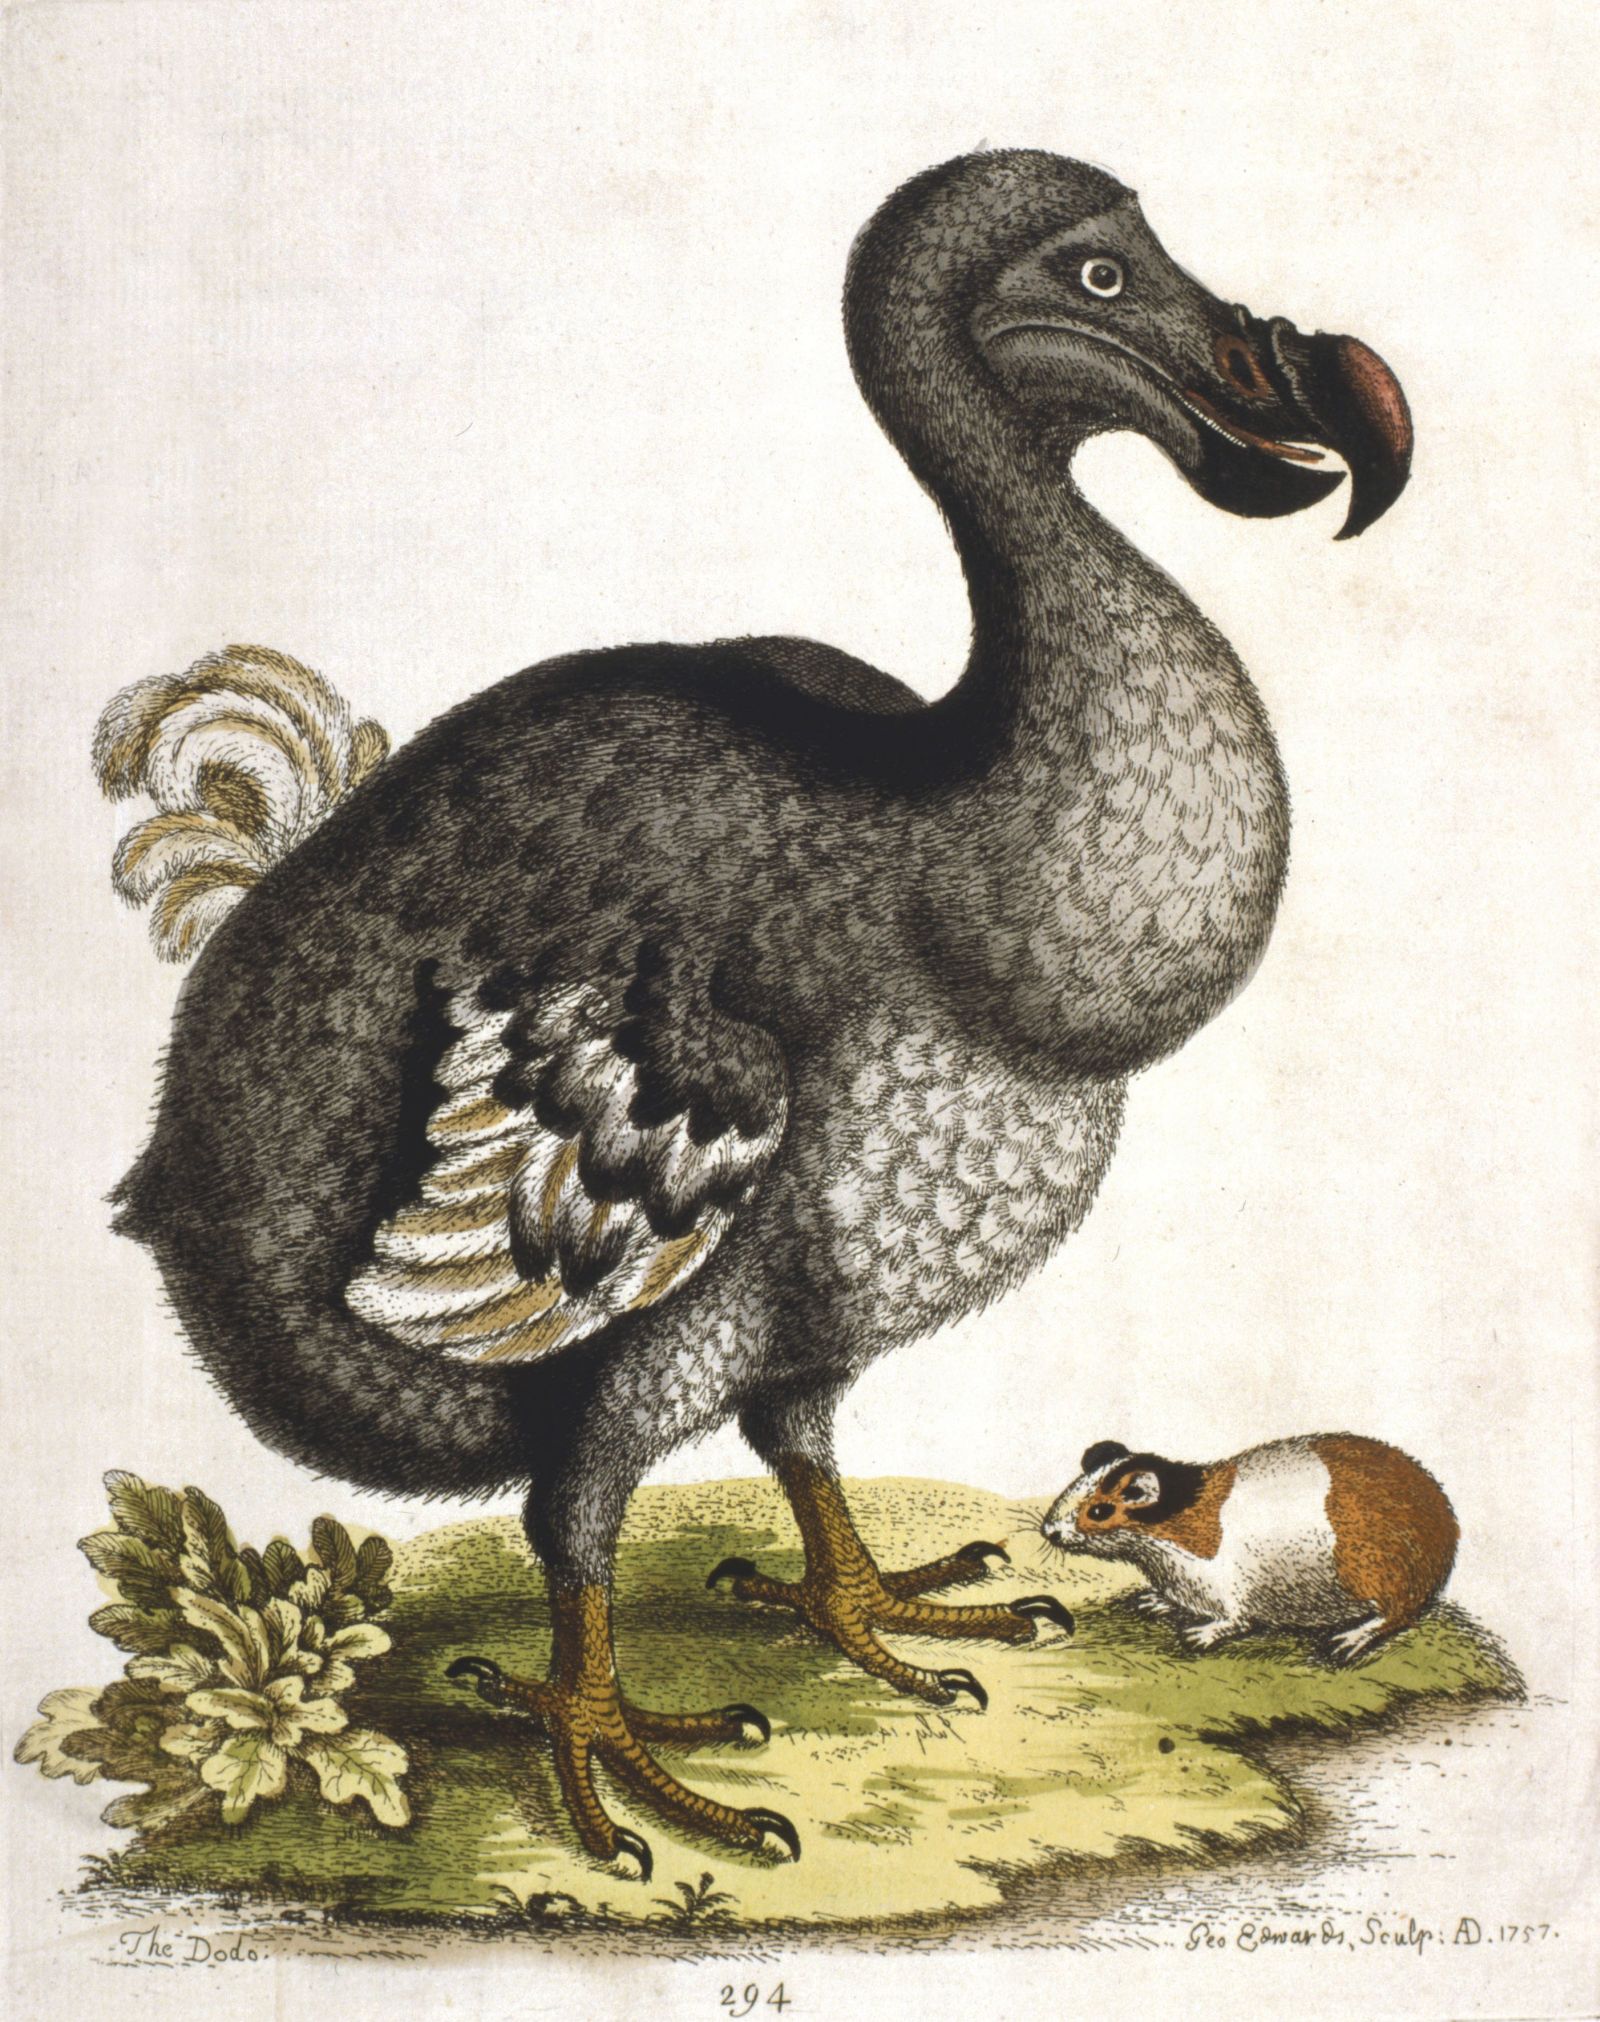 Der ausgestorbene Dodo ist das Wappentier von Mauritius und Symbol für das verlorene Paradies.